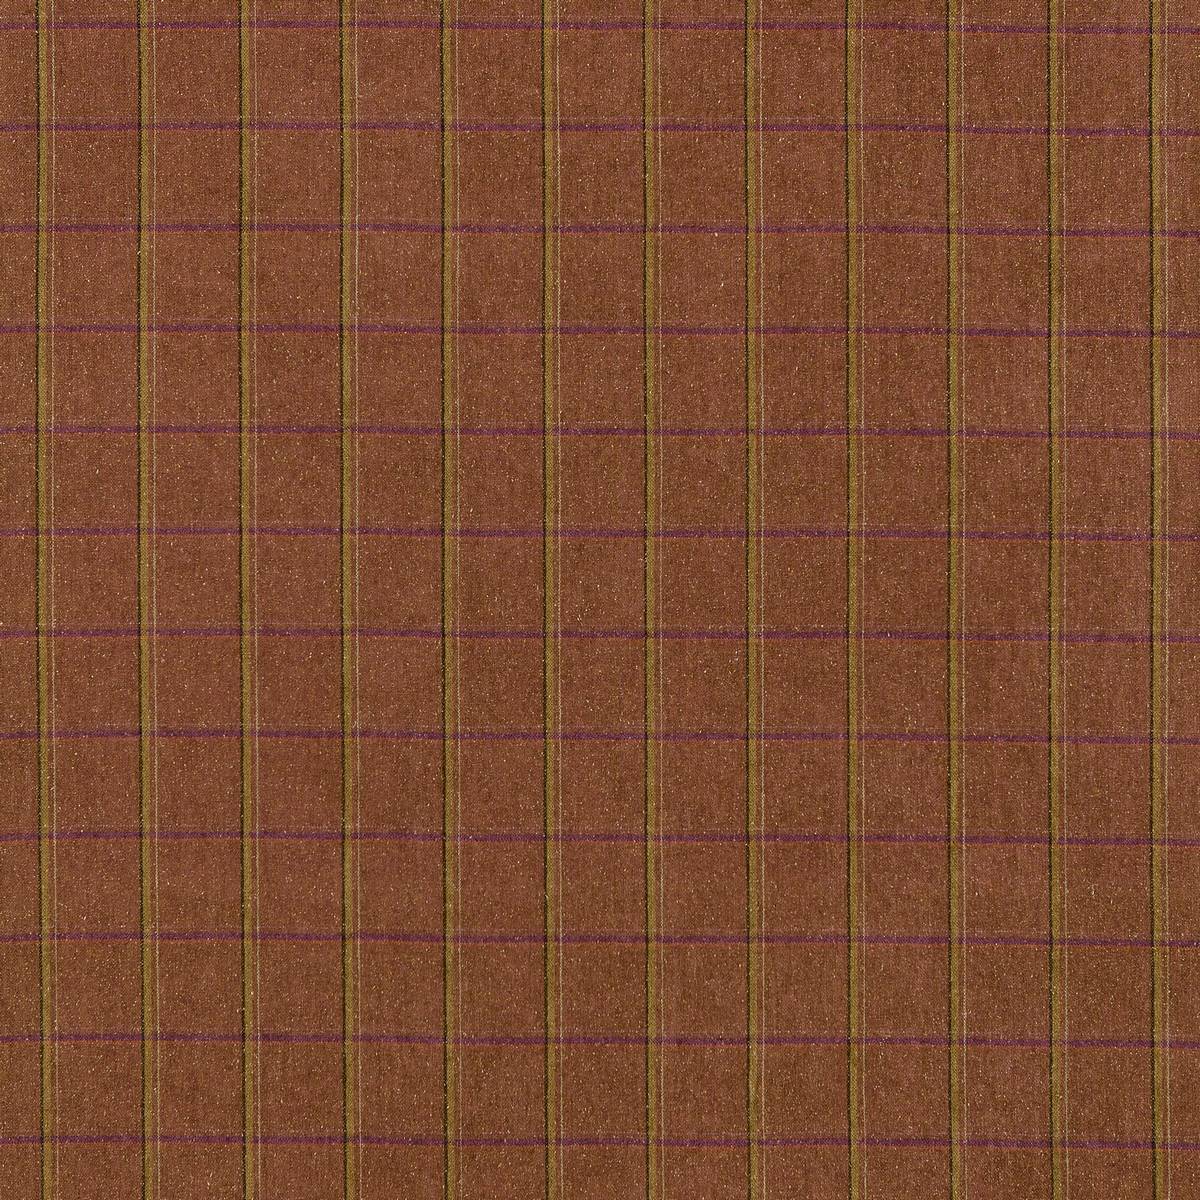 Malin Check Russet Fabric by Zoffany